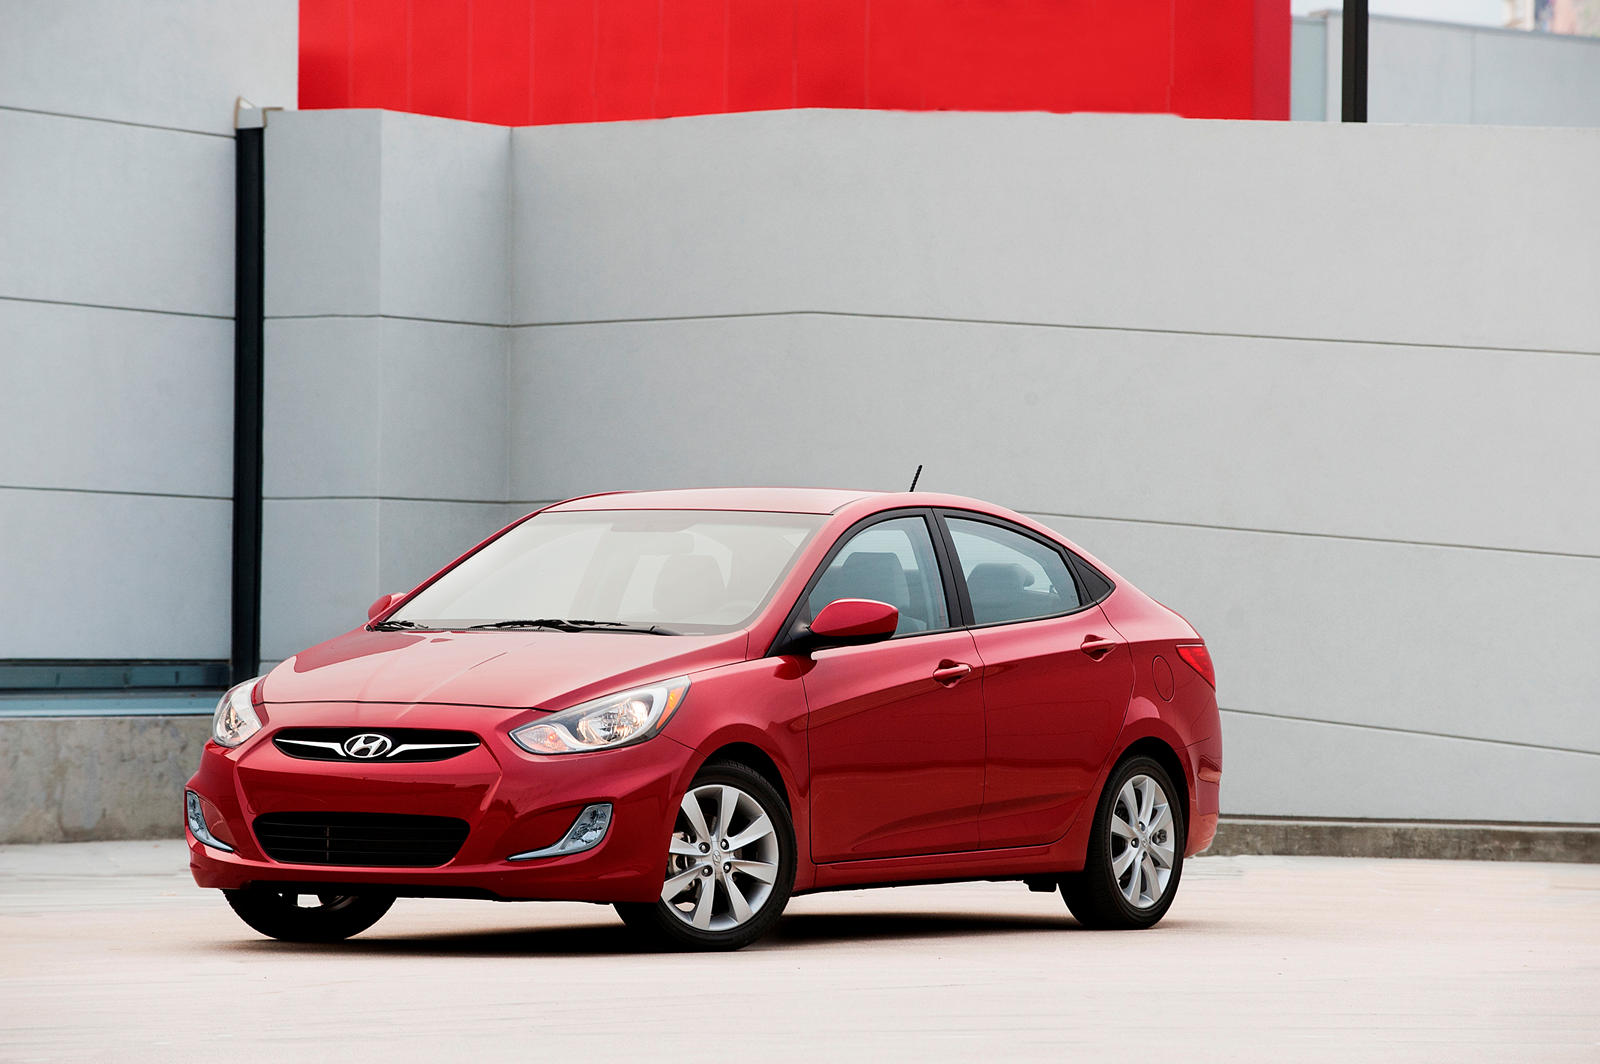 2013 Hyundai Accent Sedan Preview, Car News